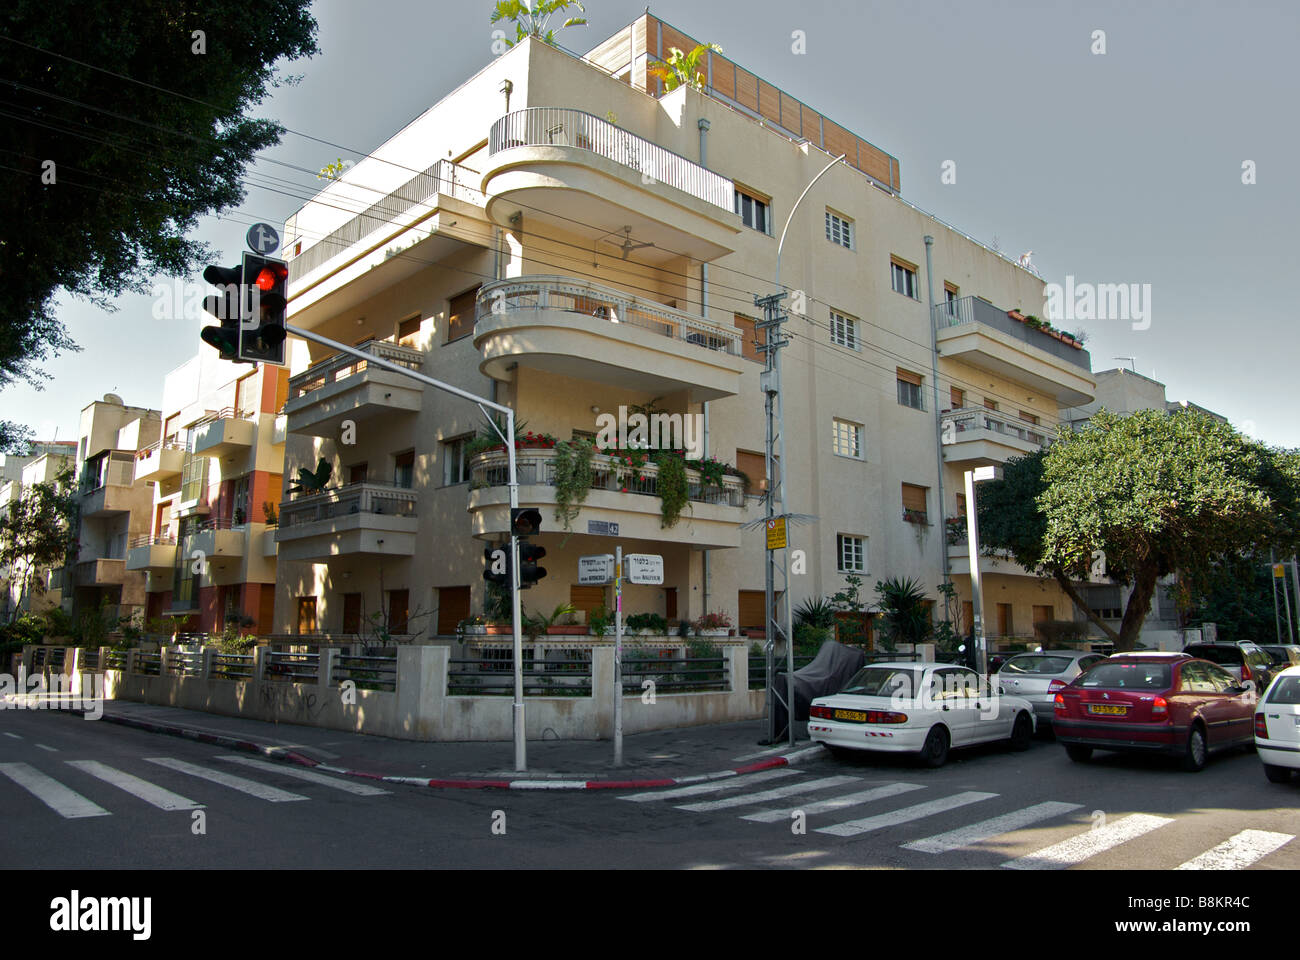 Ancien immeuble d'habitation de faible hauteur dans le modèle de conception d'architecture Bauhaus Tel Aviv Jaffa Israël Banque D'Images